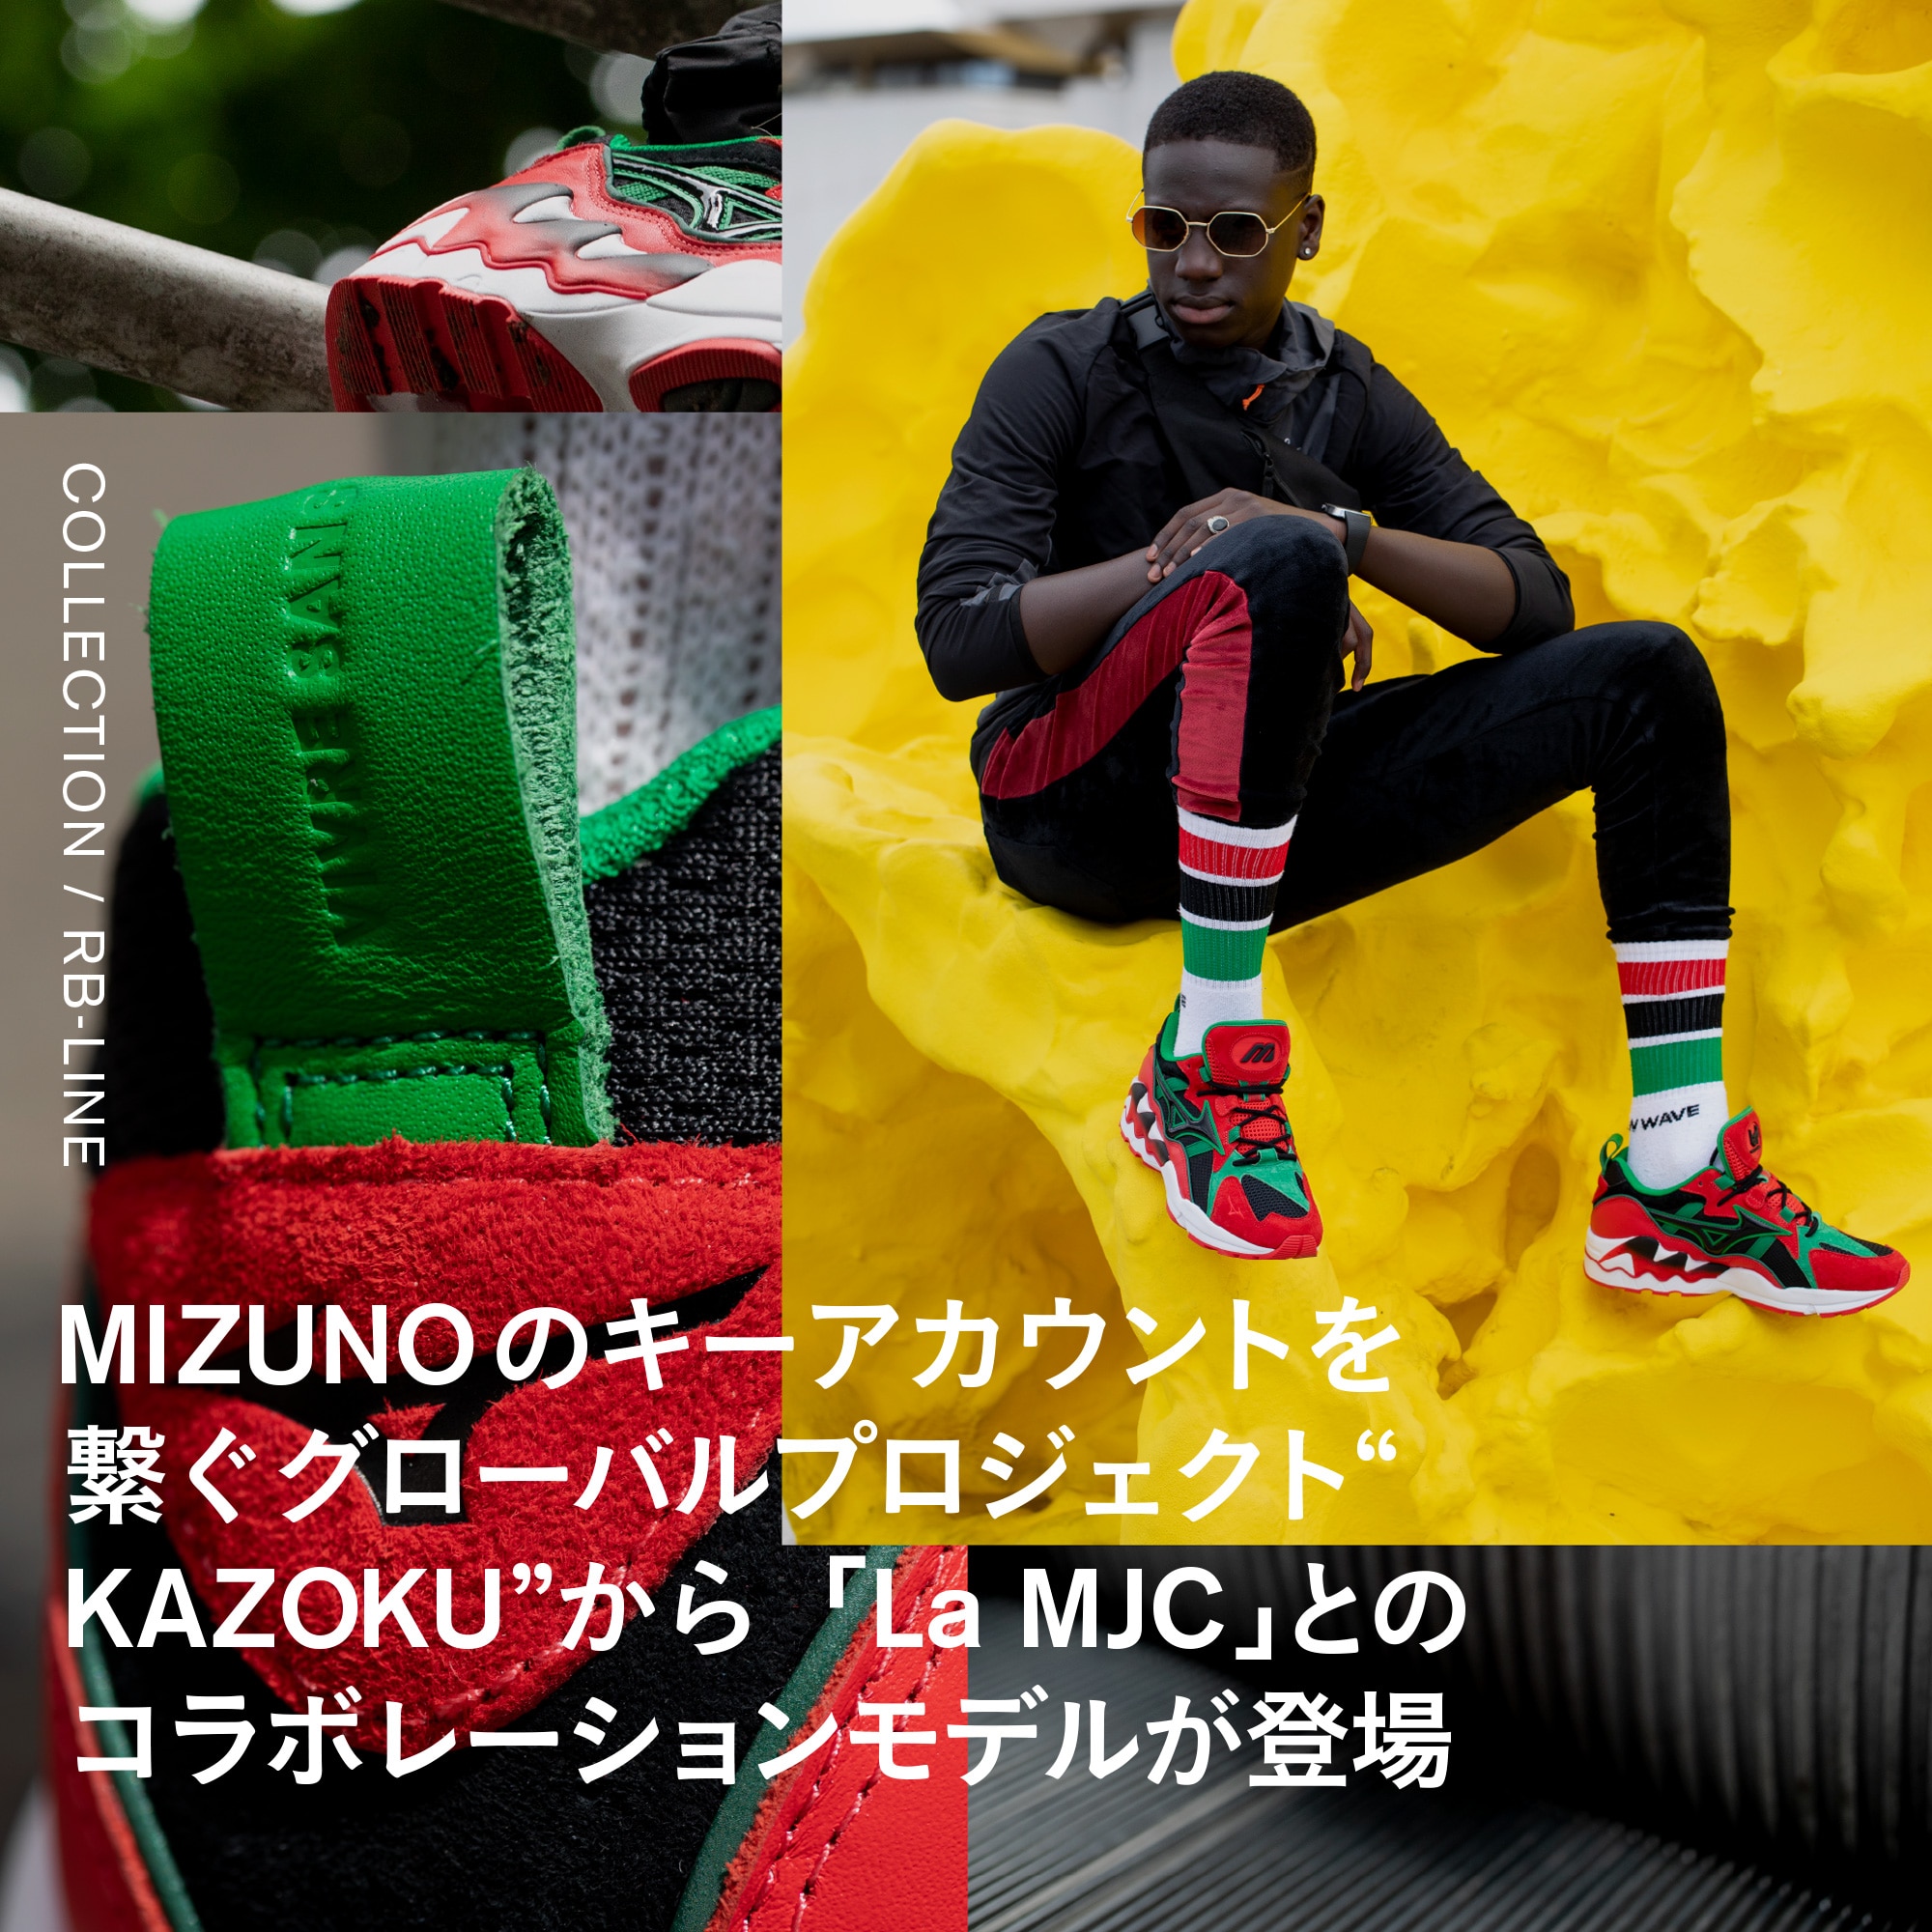 MIZUNOのキーアカウントを繋ぐグローバルプロジェクト“KAZOKU”から「La MJC」とのコラボレーションモデルが登場